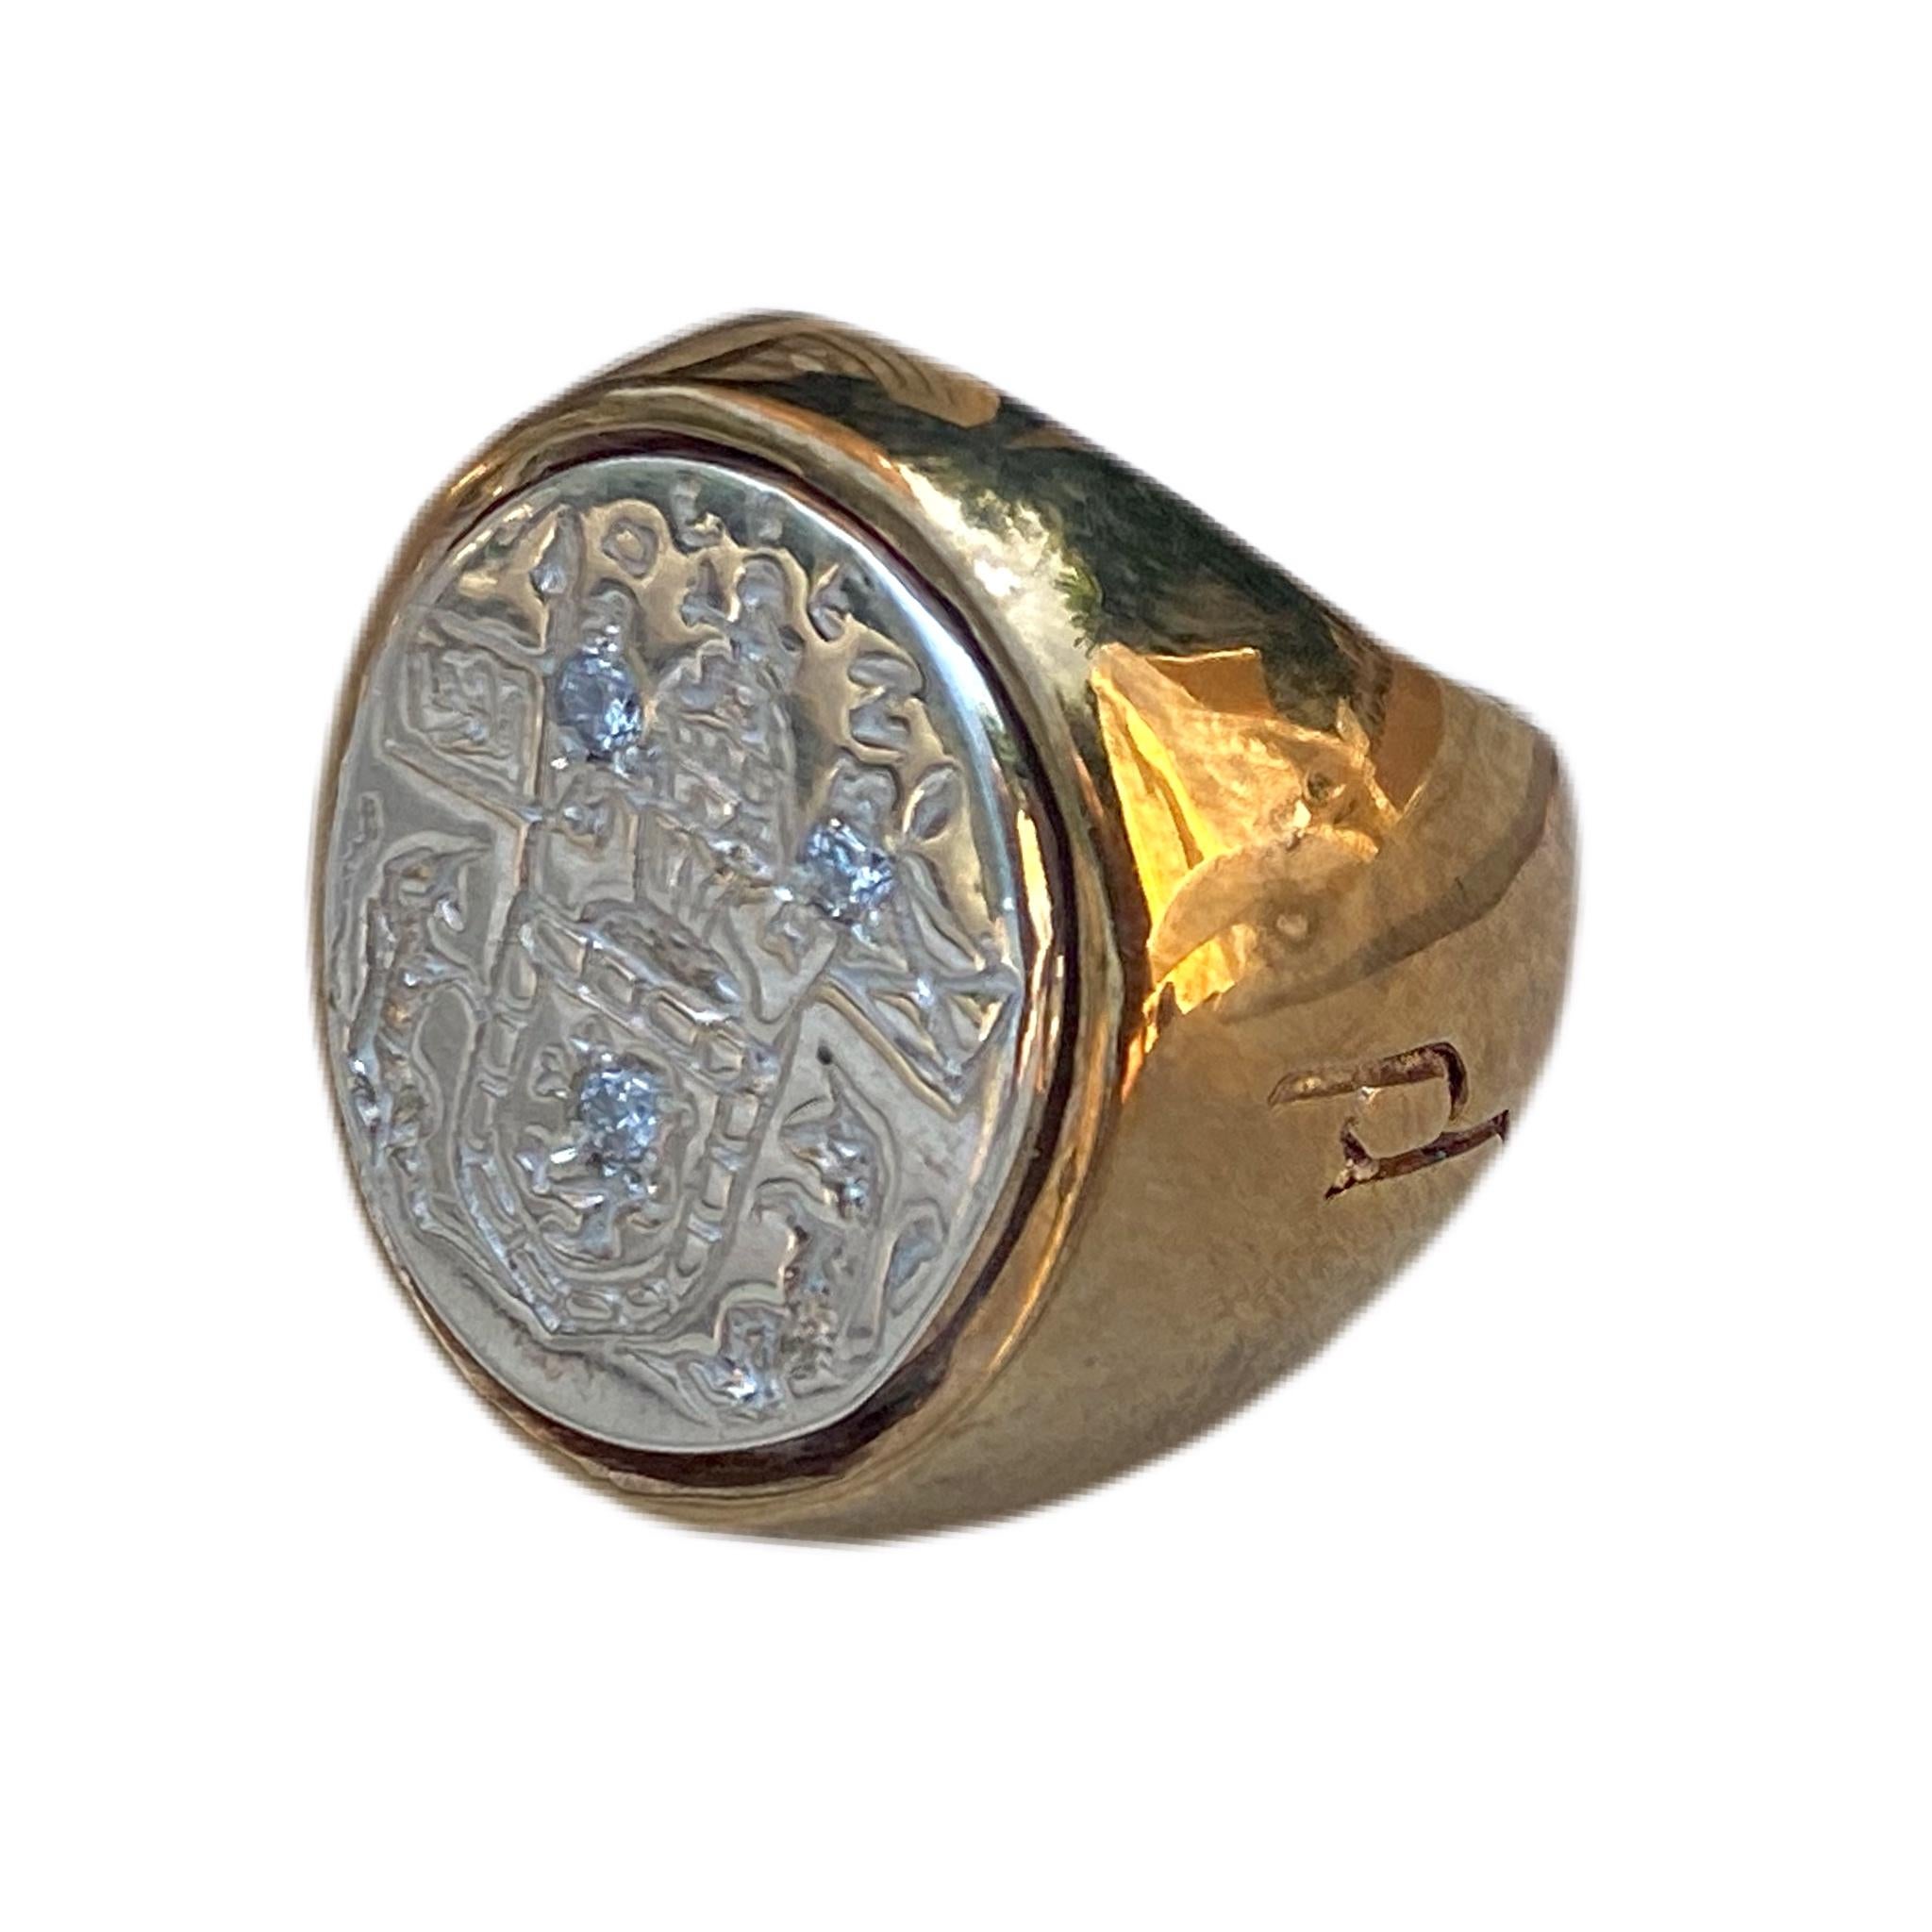 3 Stück Sapphire Unisex Crest Ring Signet Style Sterling Silber Bronze J Dauphin kann von Frauen oder Männern getragen werden.

Inspiriert durch den Ring der Königin Maria von Schottland. Goldener Siegelring; graviert; Schultern mit Blumen und